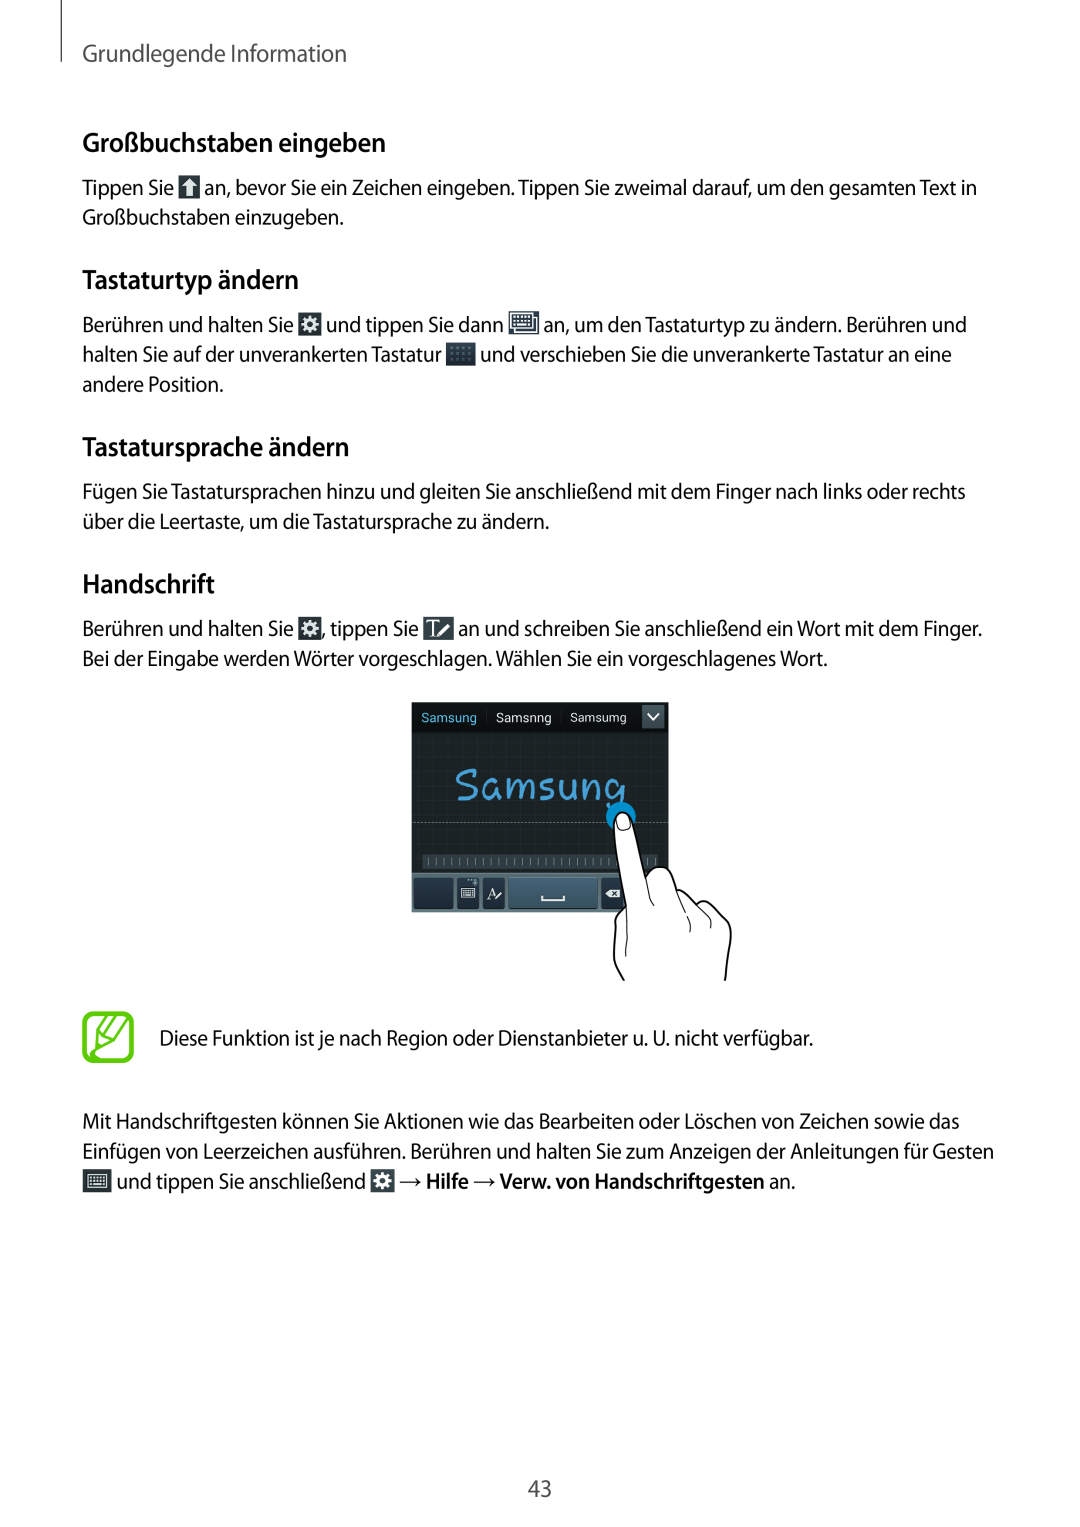 Samsung GT-I9505ZKAWIN, GT-I9505ZWAEPL Großbuchstaben eingeben, Tastaturtyp ändern, Tastatursprache ändern, Handschrift 